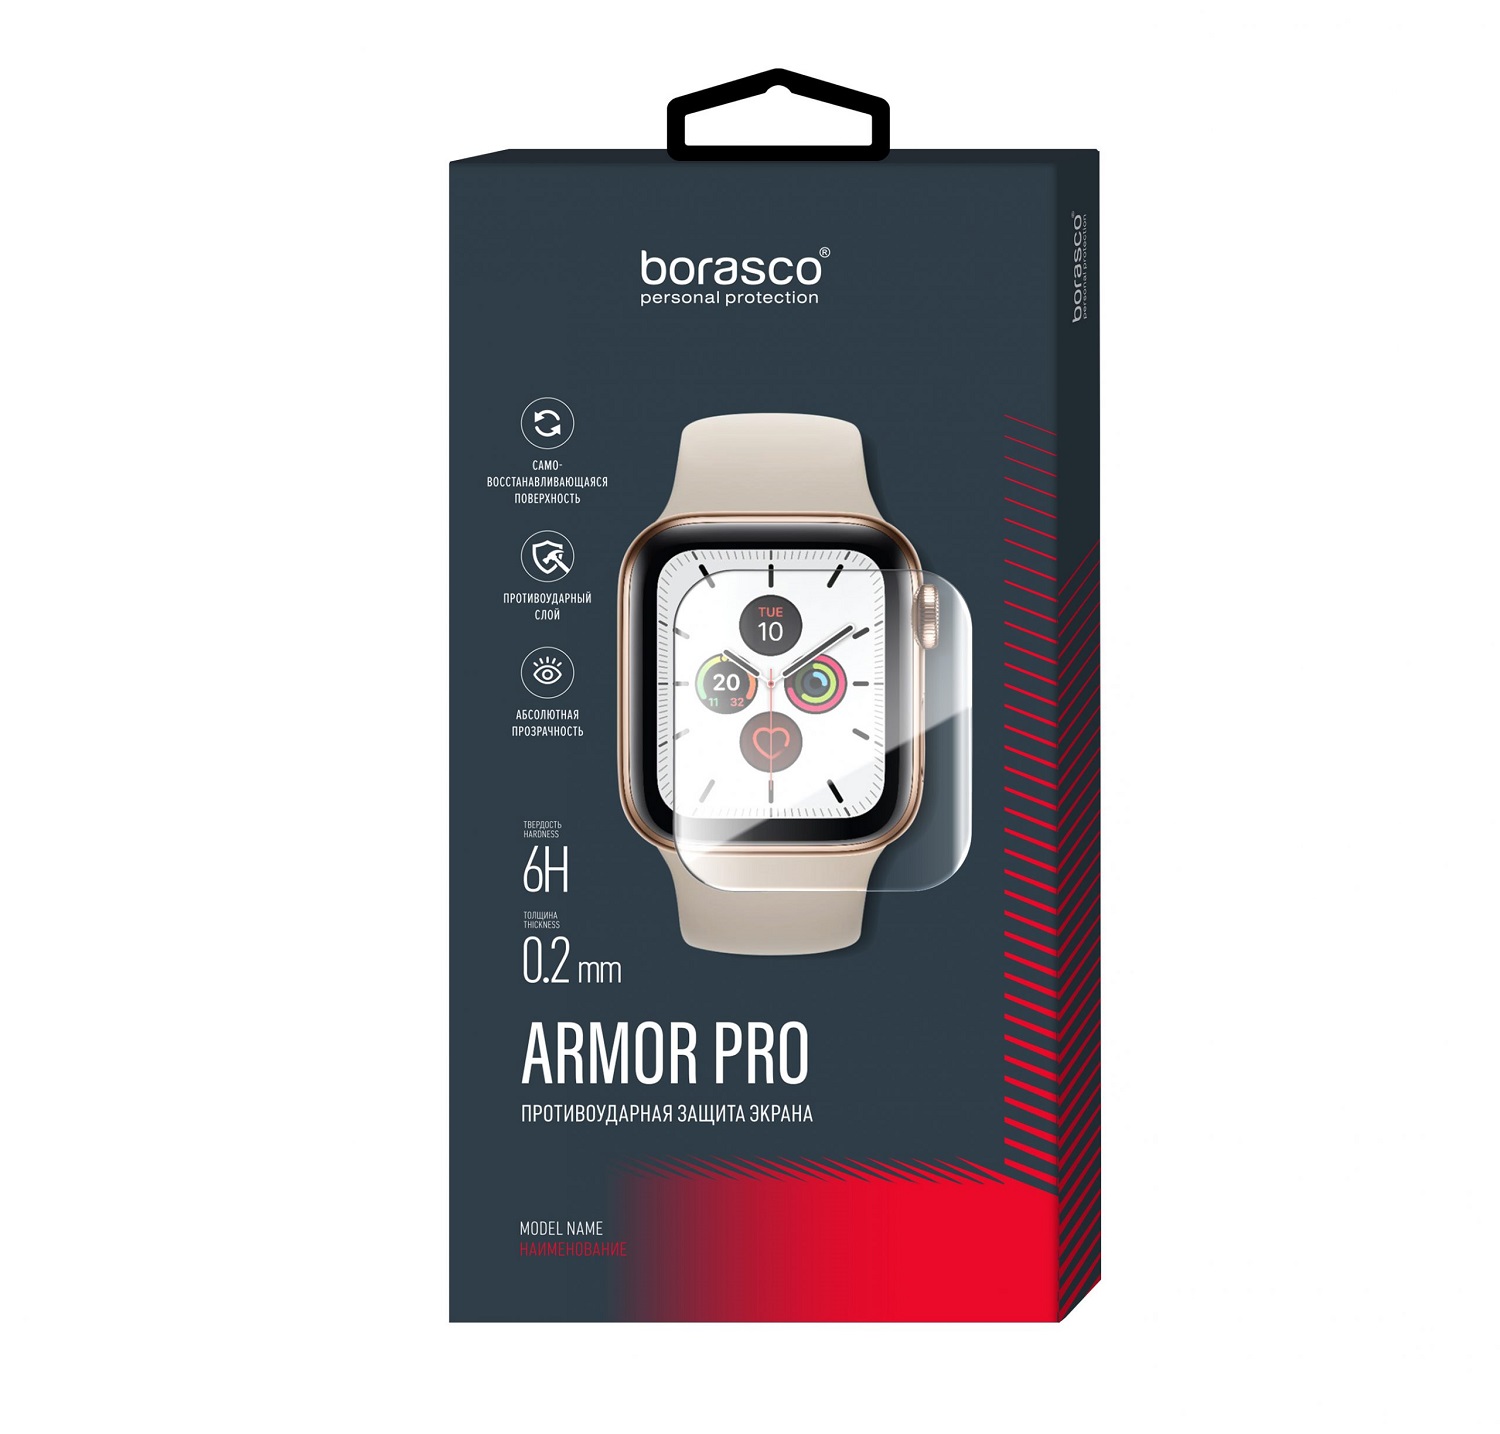 Защита экрана BoraSCO Armor Pro для Xiaomi Mi band 3 защита экрана borasco armor pro для honor band 2